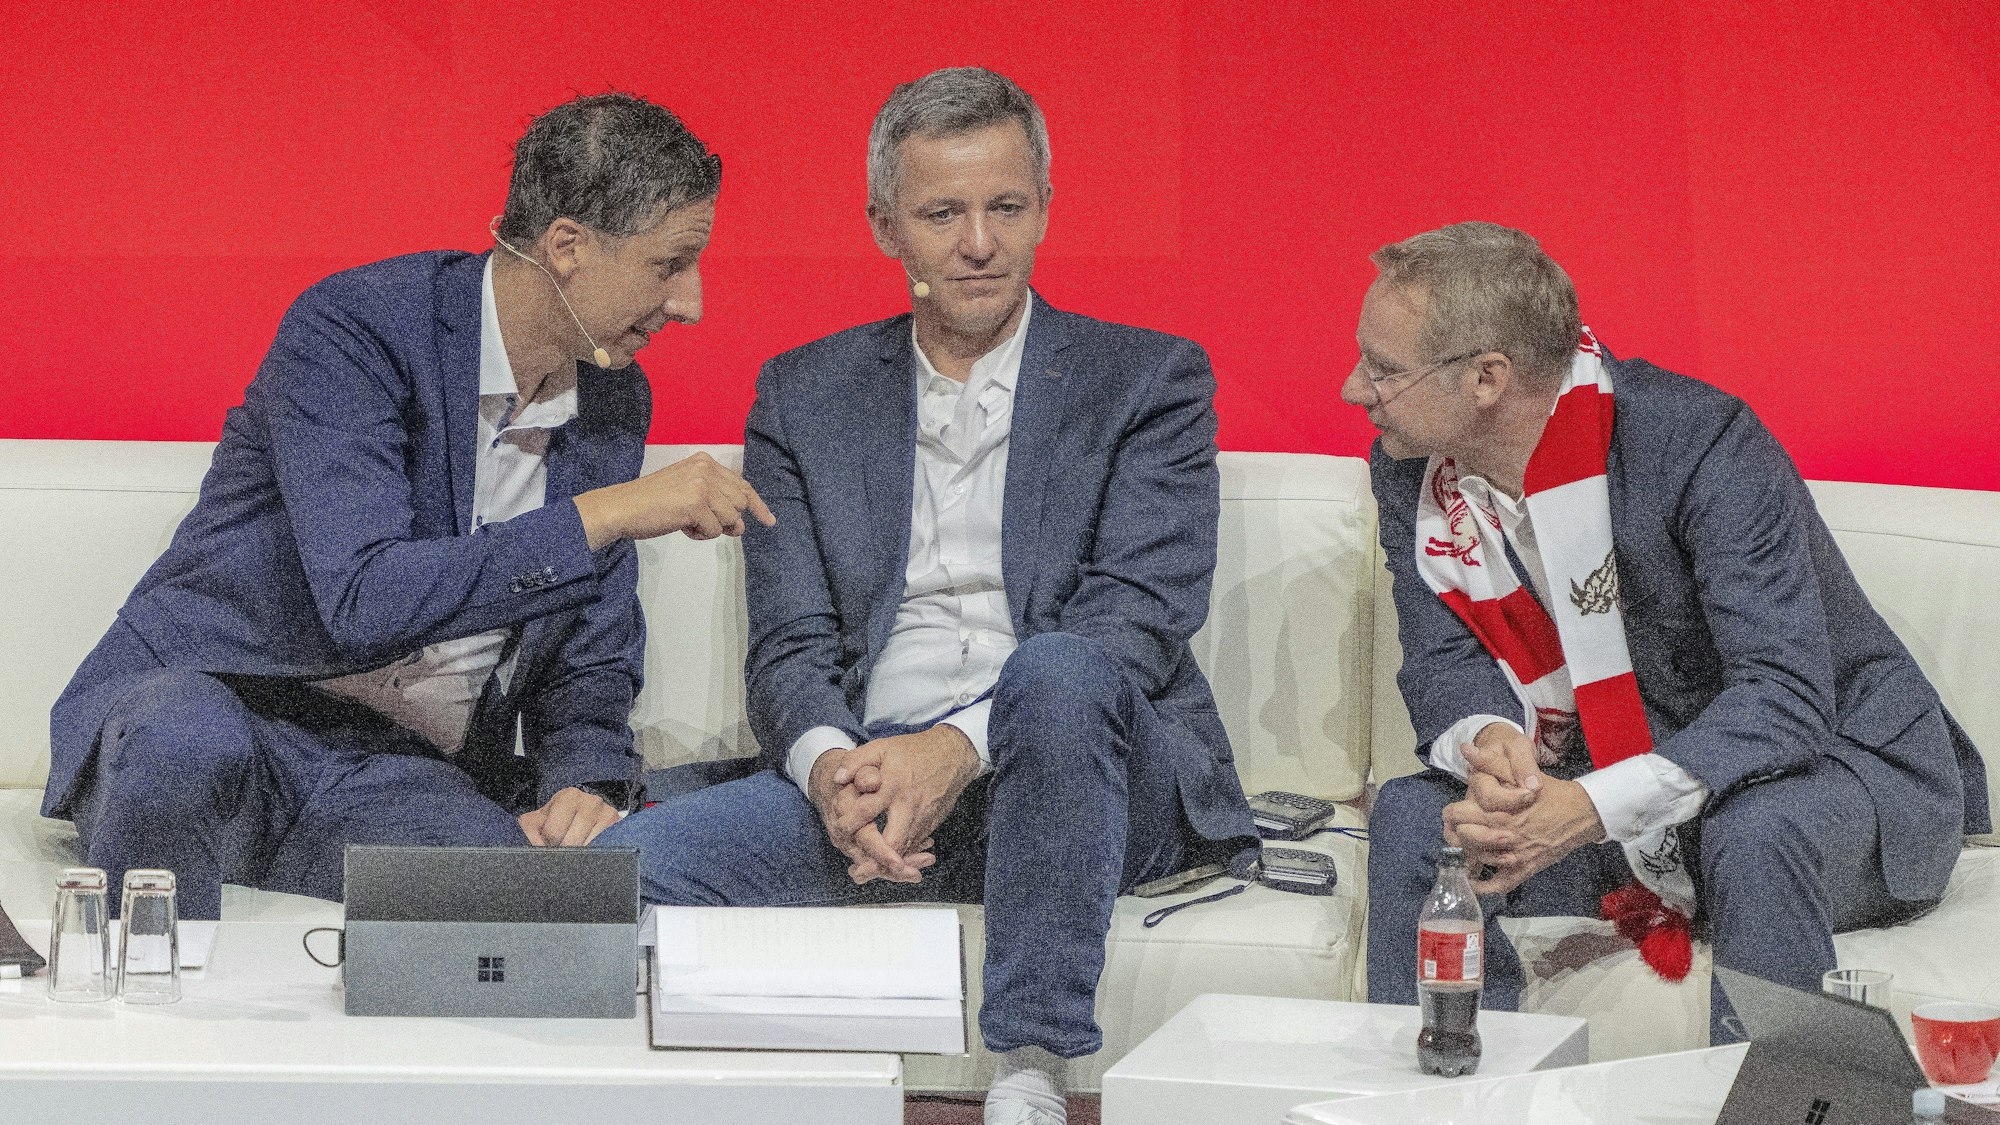 Die Geschäftsführer Christian Keller (v.l.) und Philipp Türoff diskutieren während der Mitgliederversammlung des 1. FC Köln mit Vizepräsident Eckhard Sauren.